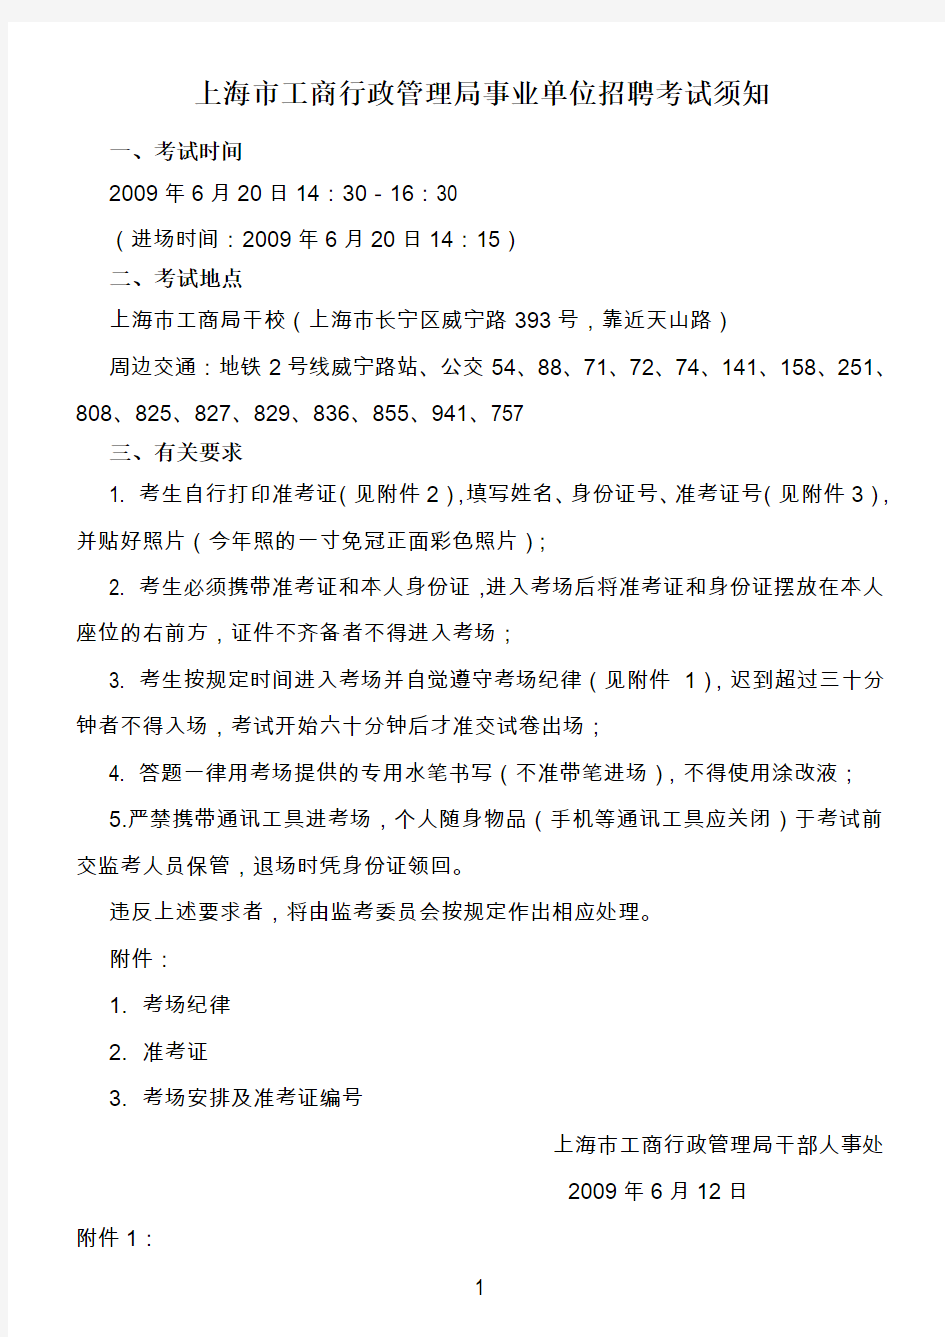 上海市工商行政管理局事业单位招聘考试须知